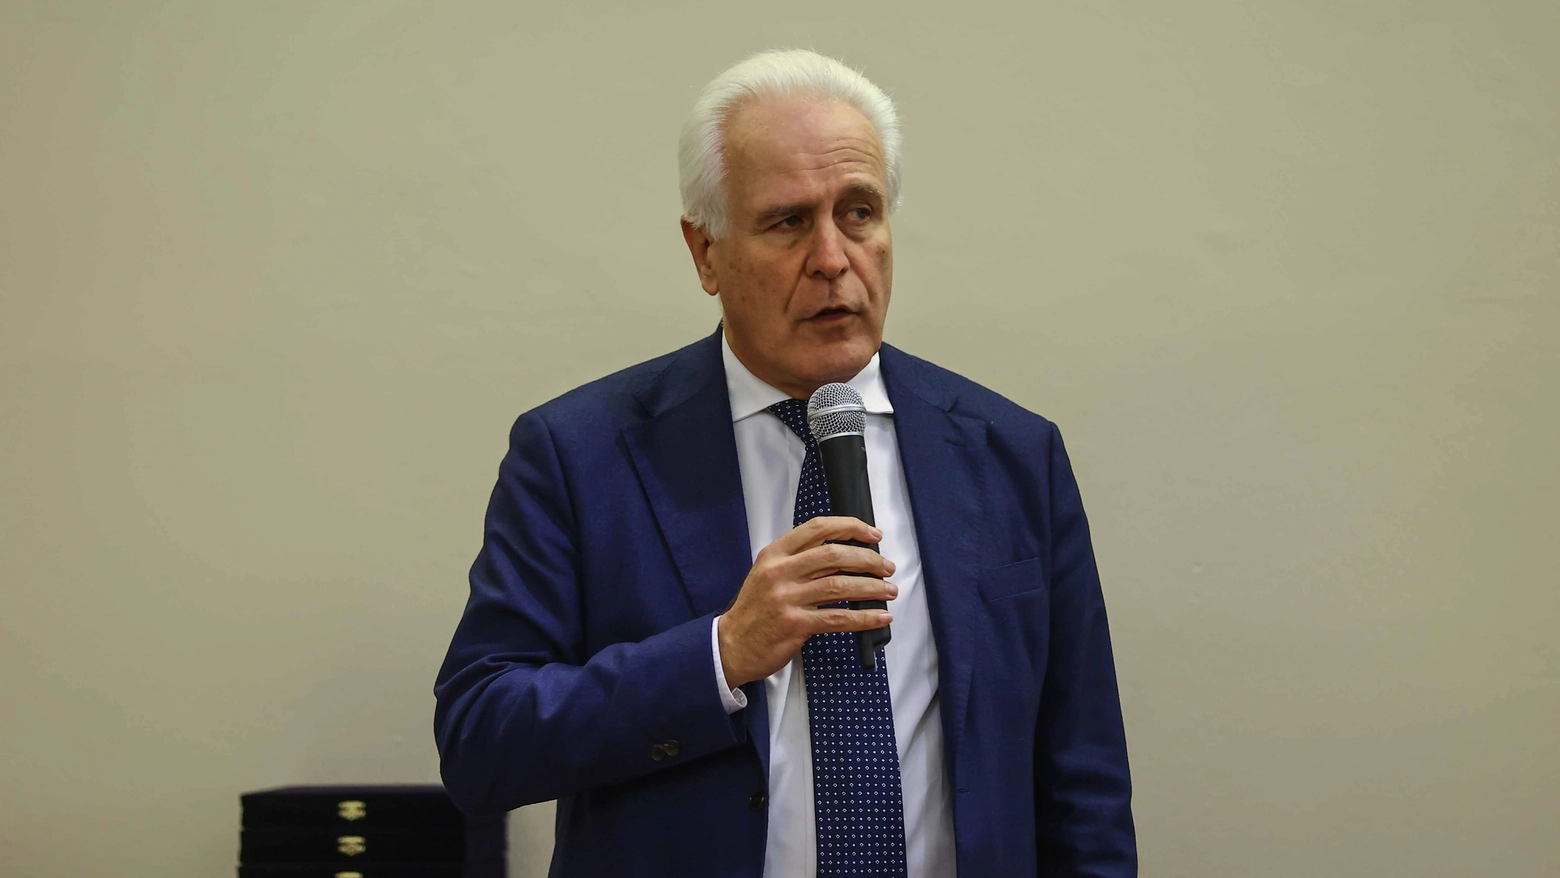 Il presidente della regione Toscana Eugenio Giani (Foto Germogli)